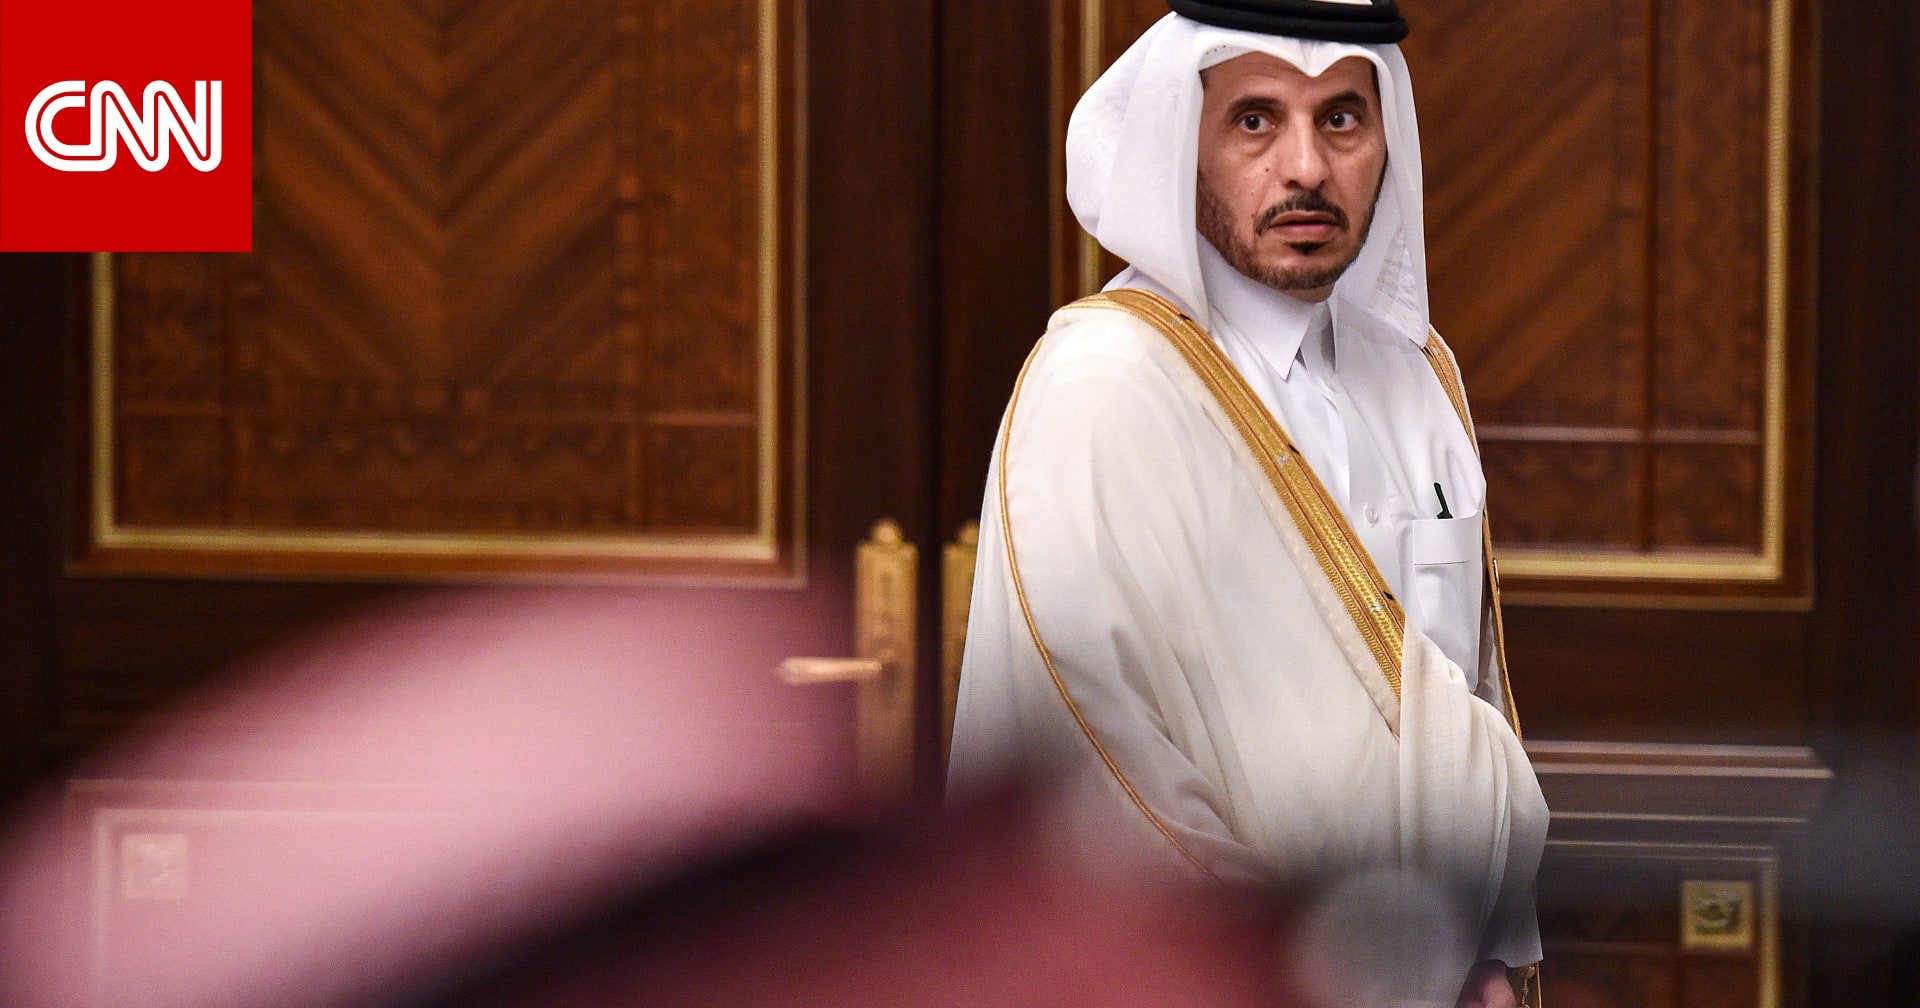 صحفي سعودي: قطر عرضت التخلي عن الإخوان.. ومن مصلحة الدوحة العودة للحضن الخليجي - CNN Arabic